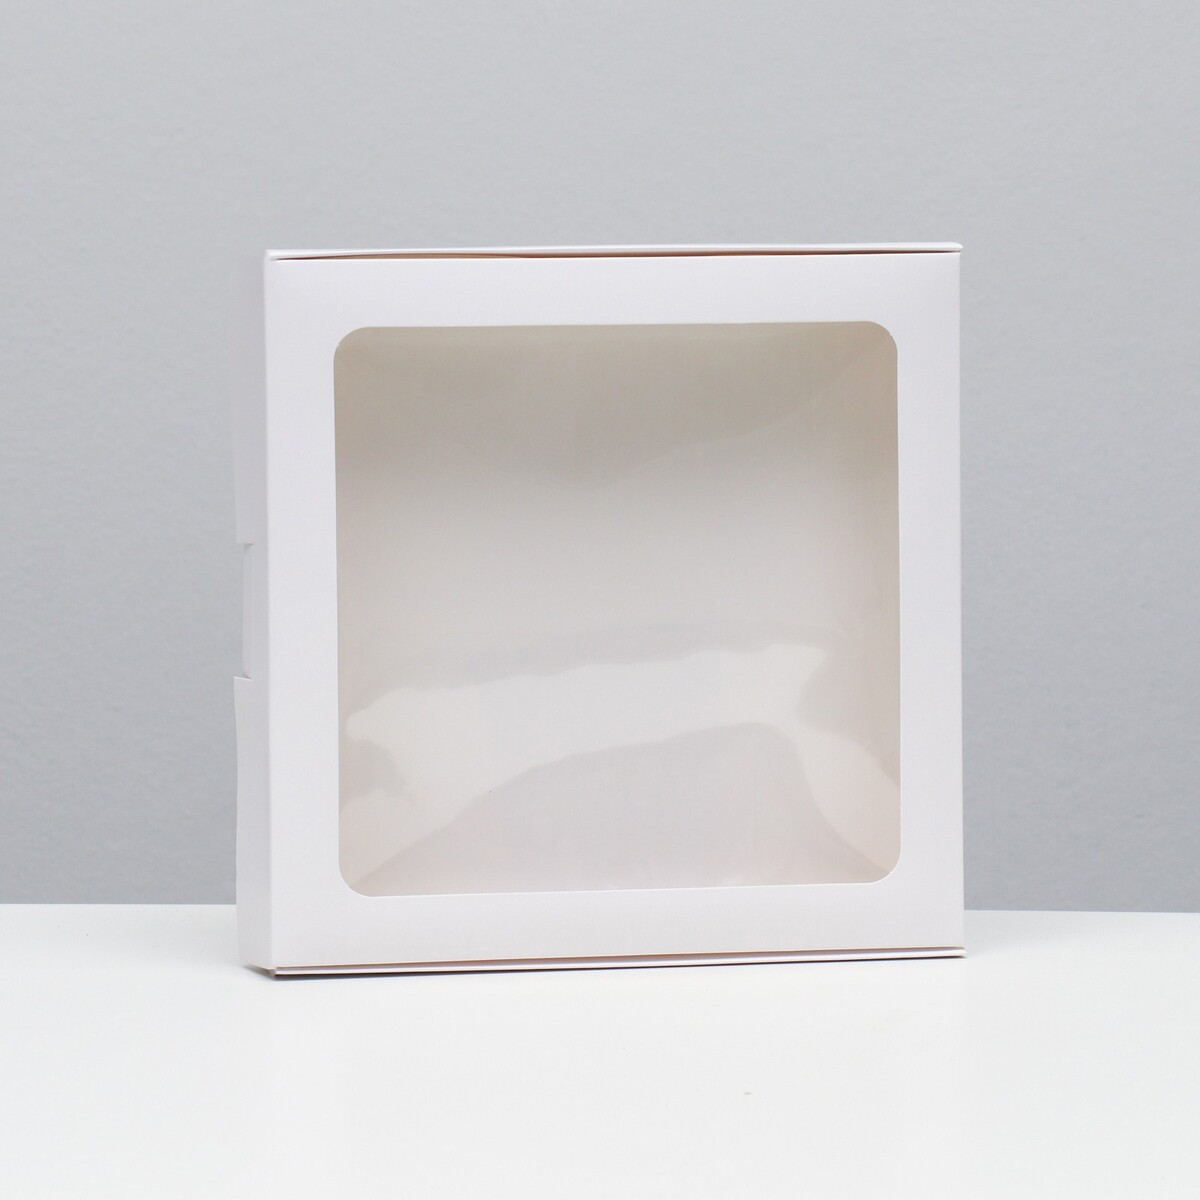 Коробка самосборная, белая, 21 х 21 х 3 см коробка самосборная белая 21 х 21 х 3 см